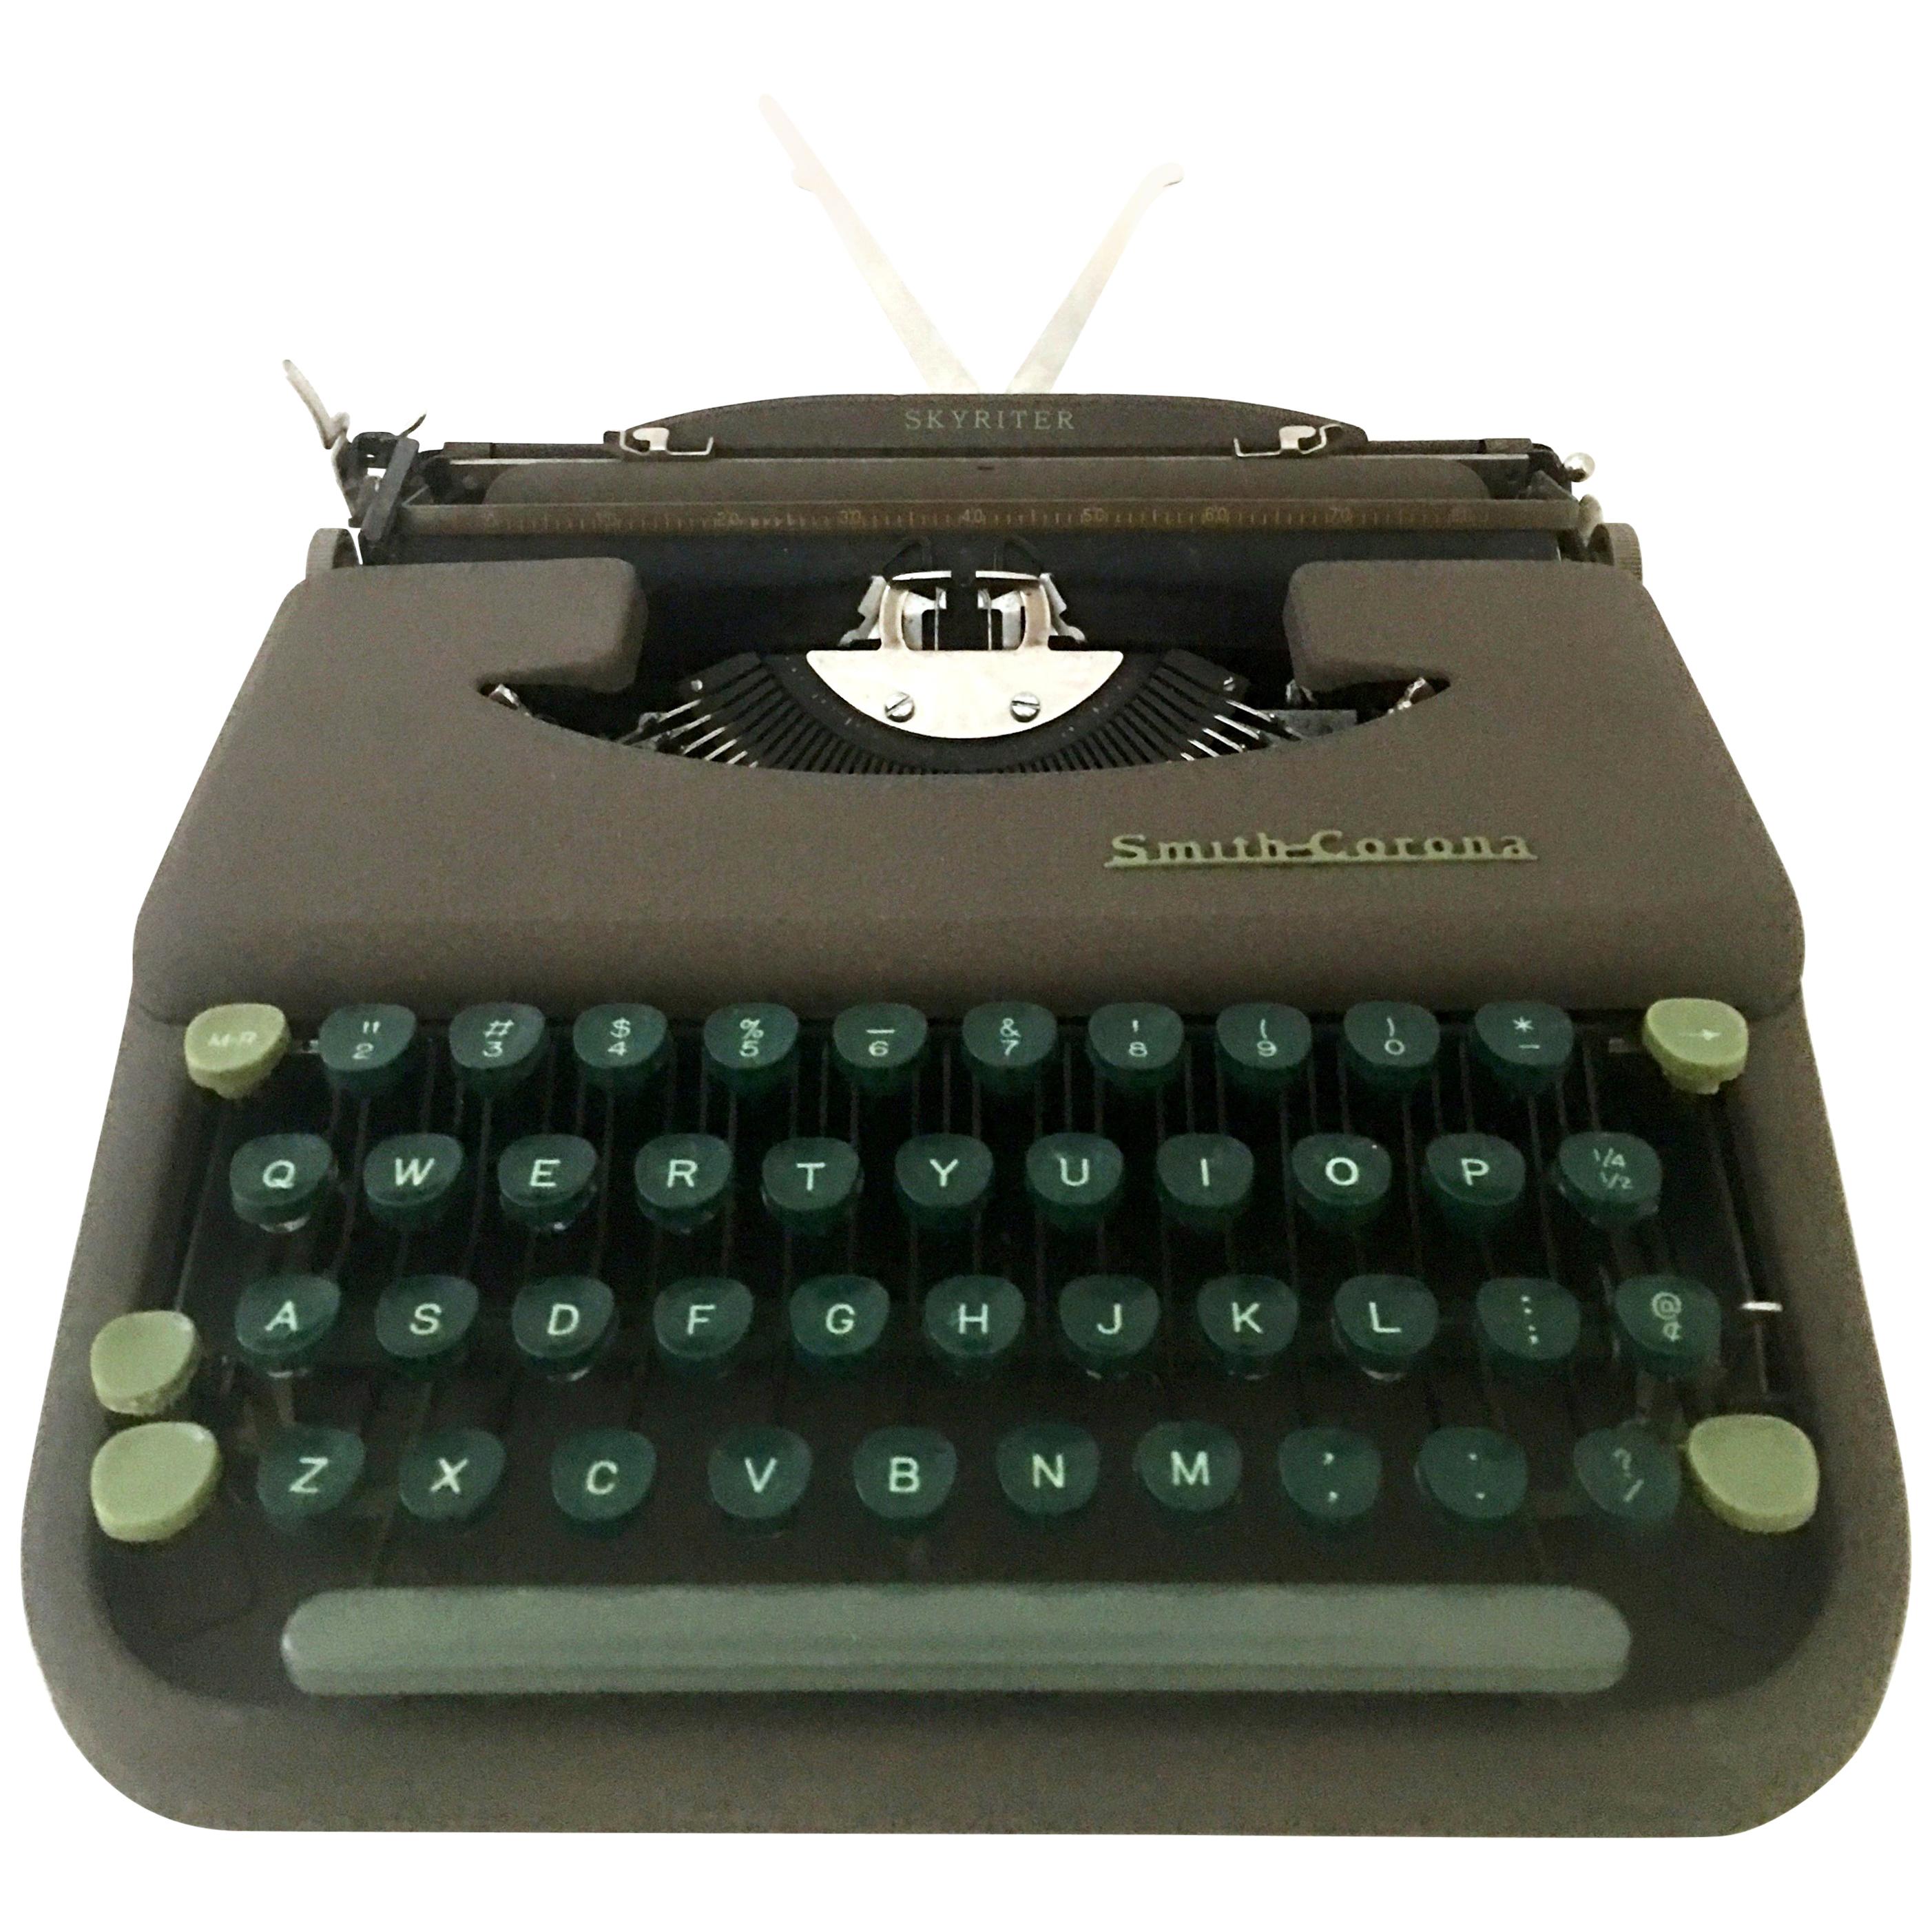 1940'S "Skywriter" Portable Typewriter by, L.C. Smith & Corono